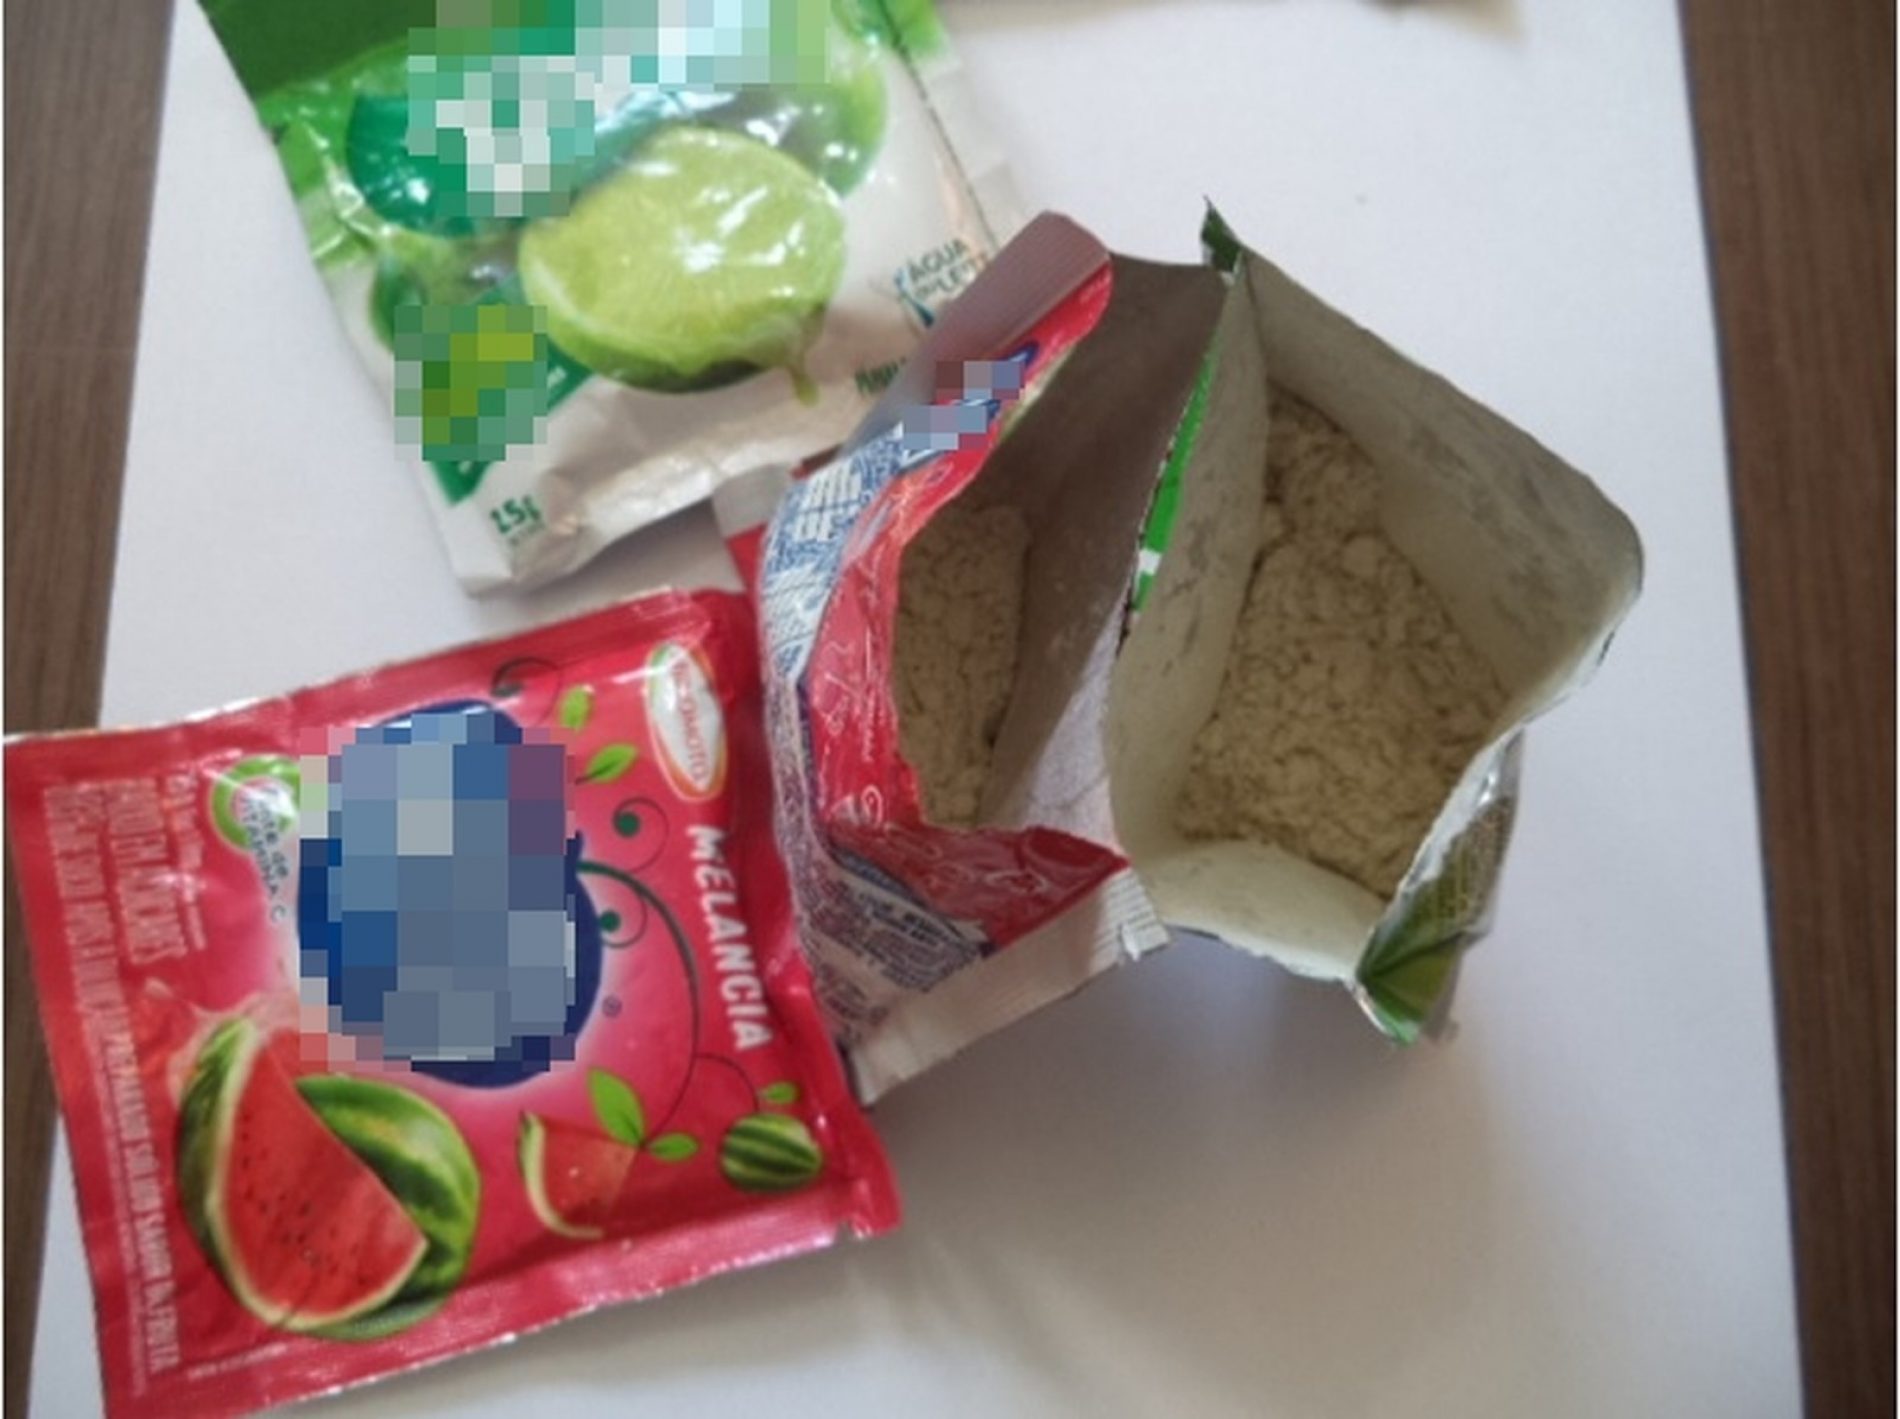 REGIÃO: Agentes encontram cocaína em pacote de suco em pó enviado pelo correio a detento